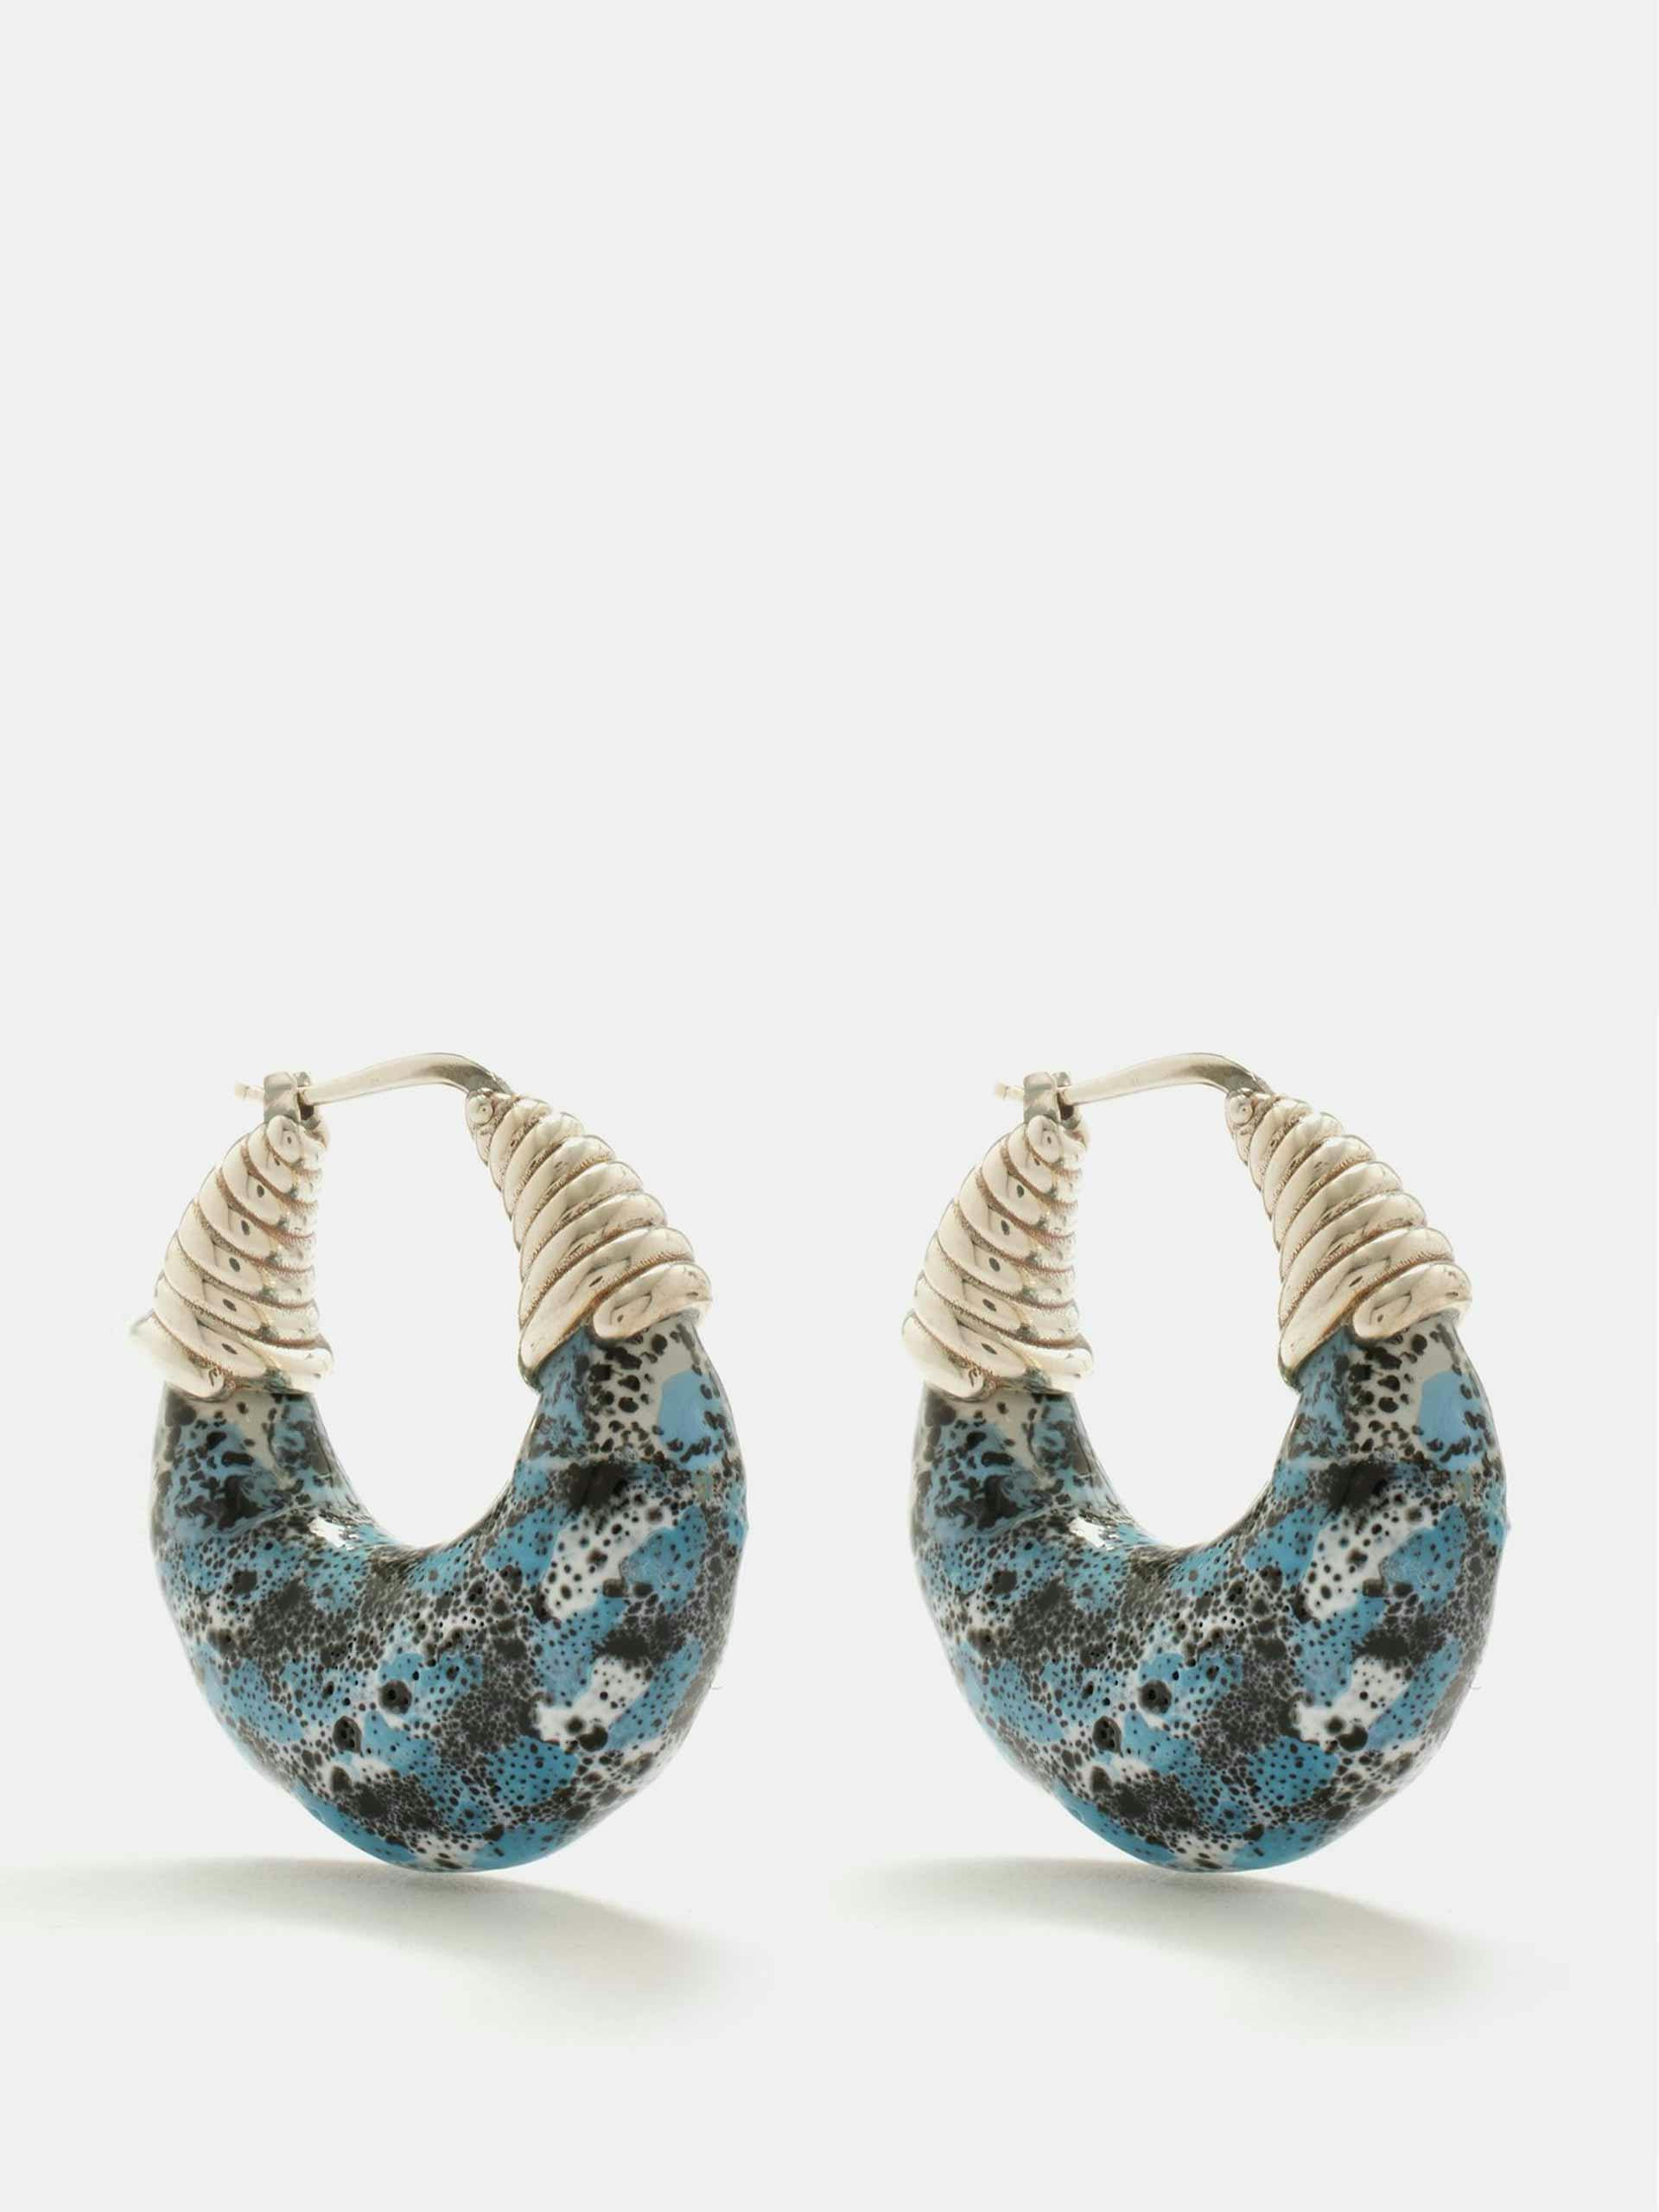 Ceramic and sterling-silver hoop earrings